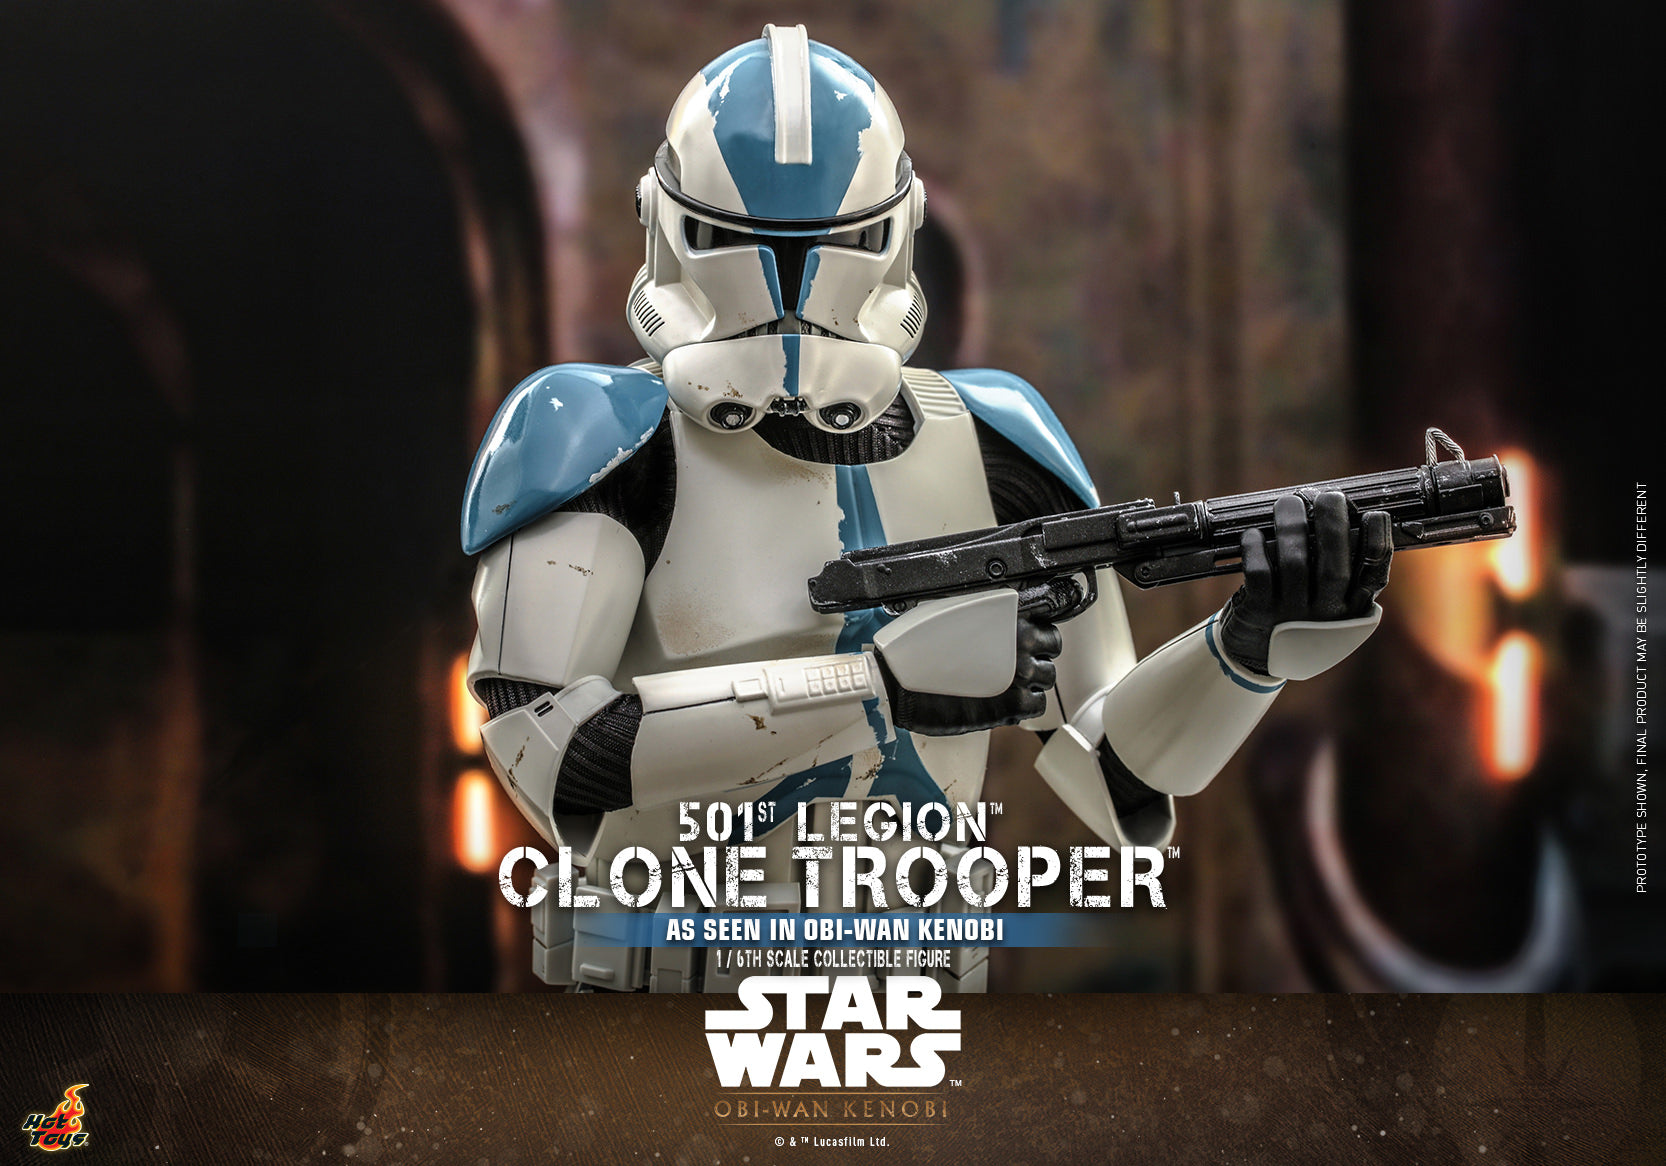 Clone Trooper: 501st Legion: Star Wars: Obi-Wan Kenobi: TMS92 Hot Toys